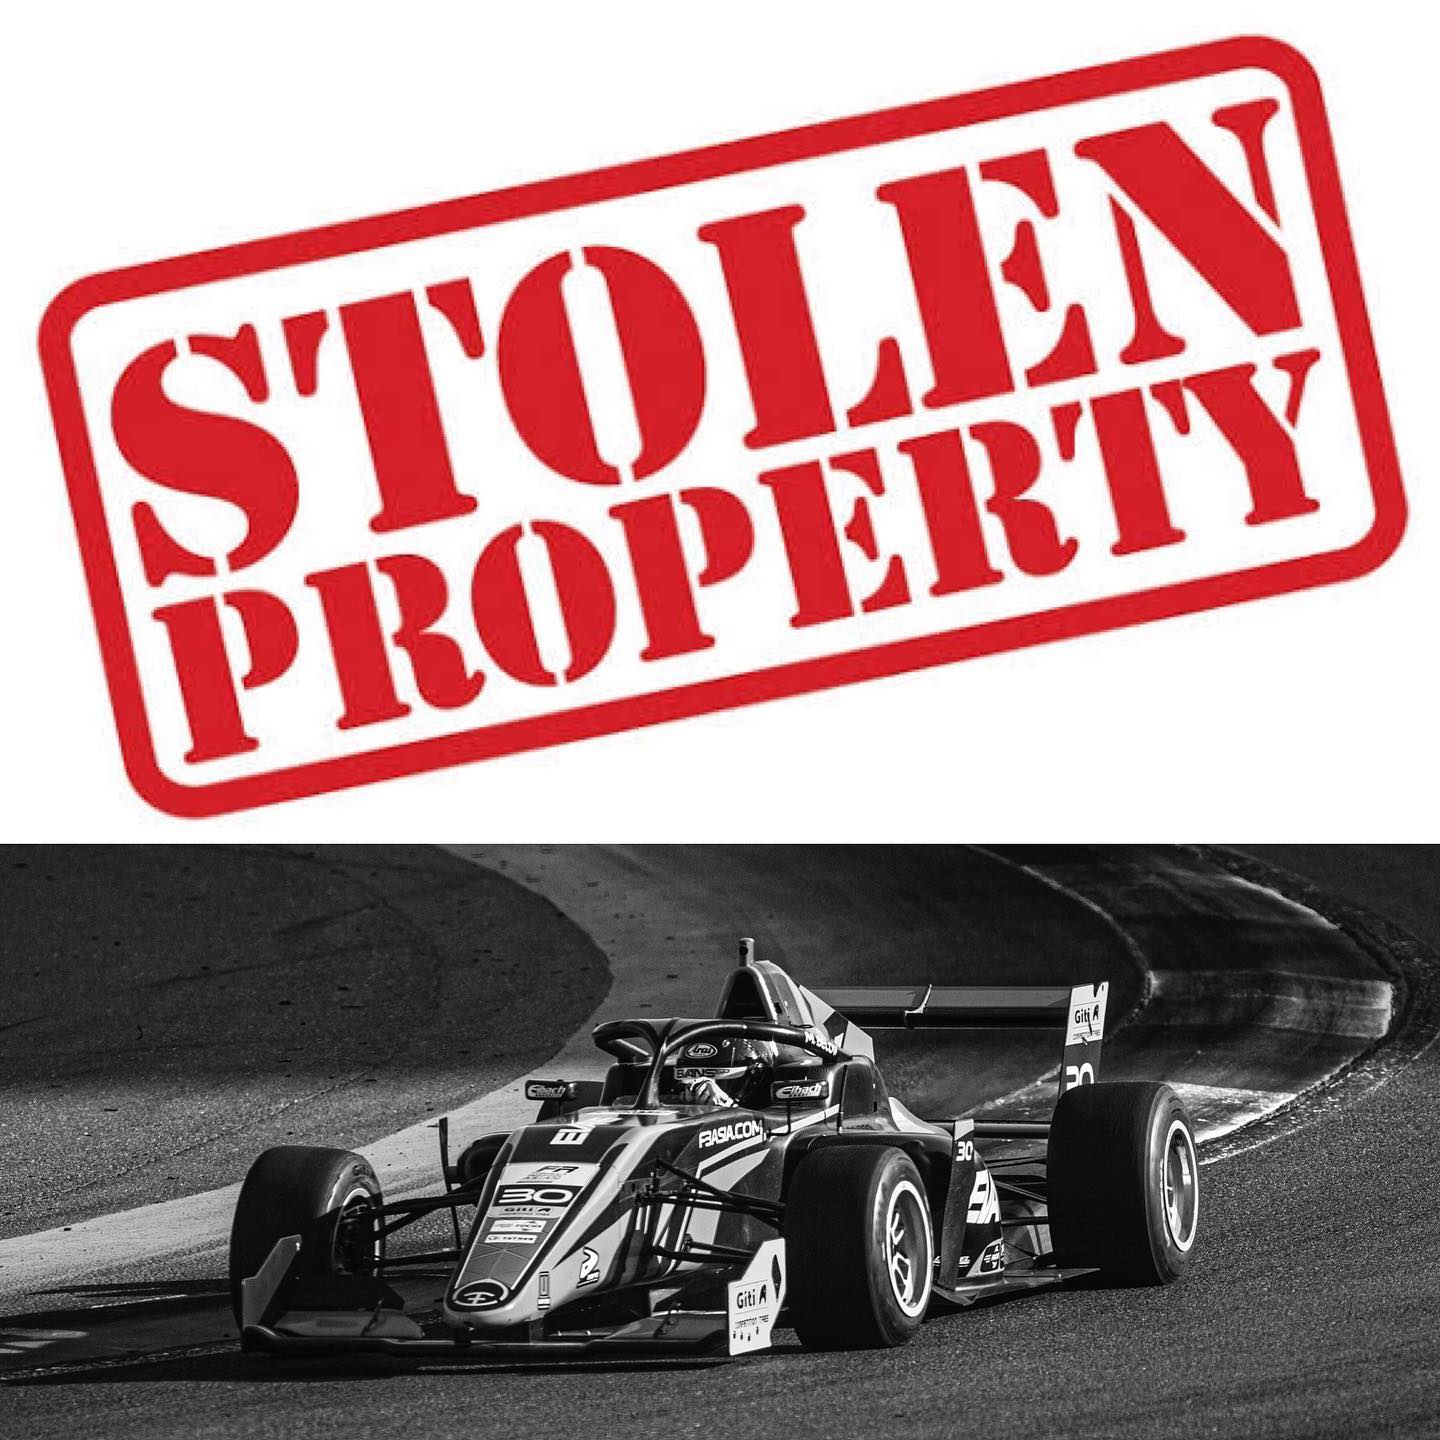 Zespół Evans GP zgłosił kradzież swojego bolidu